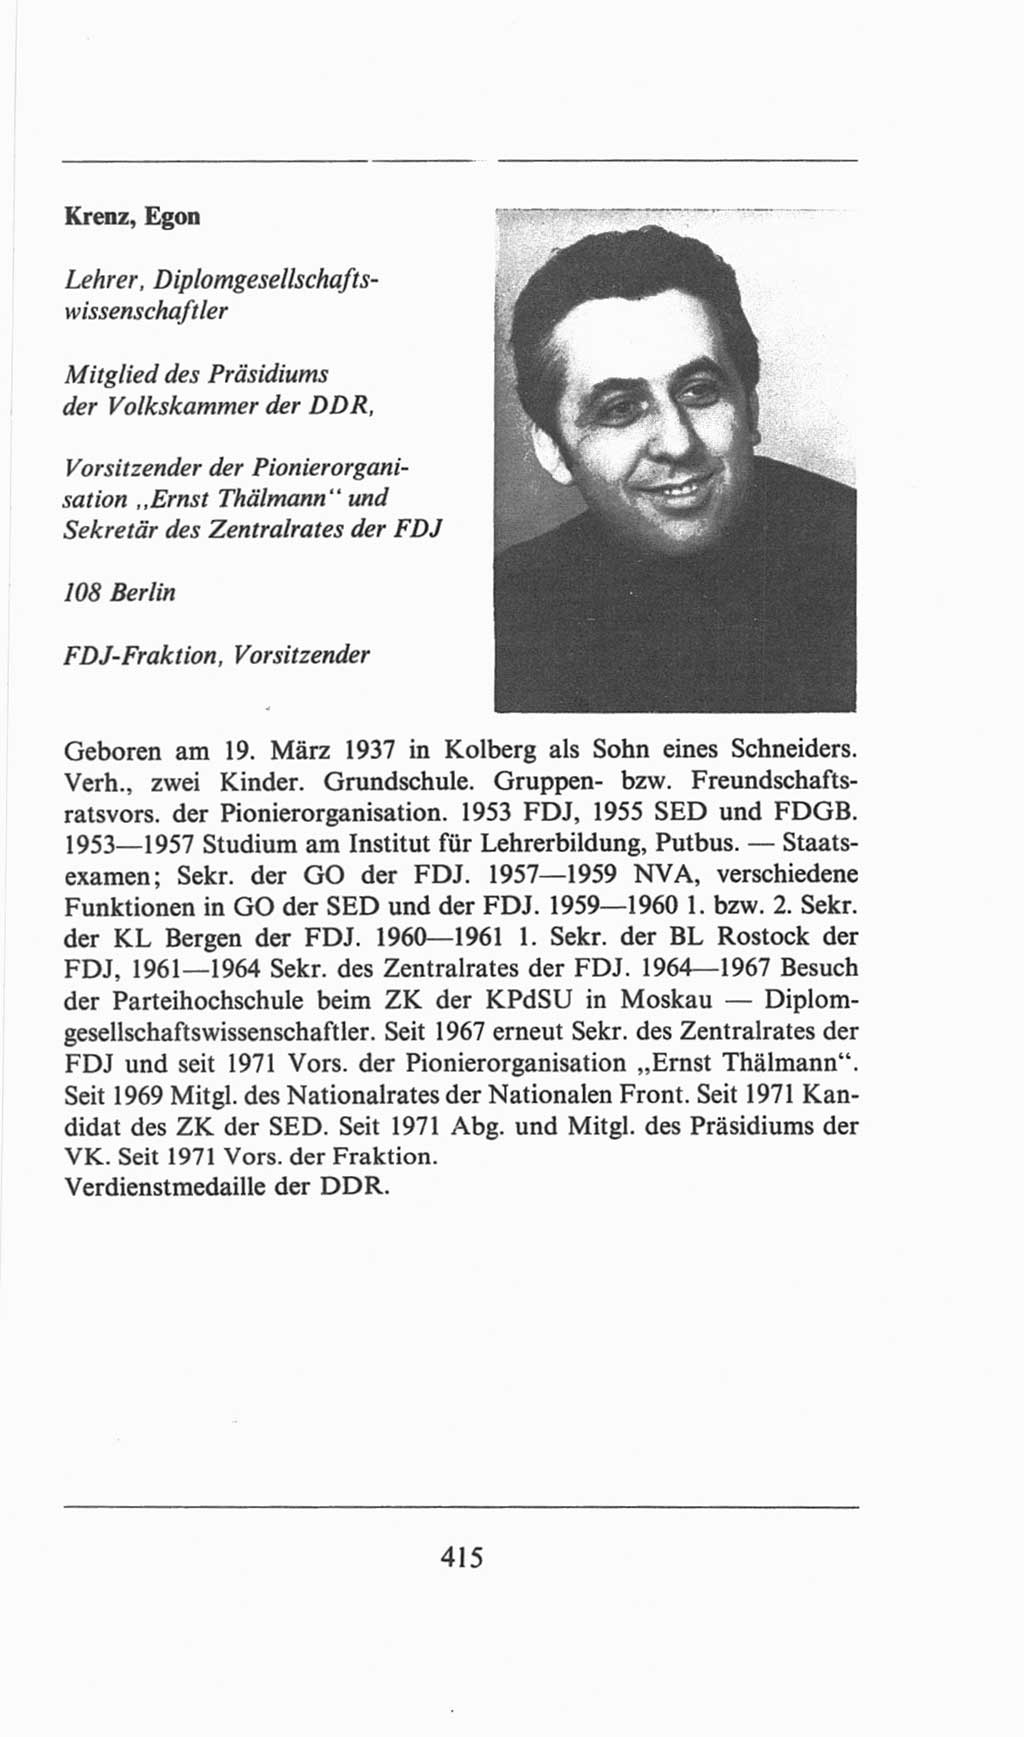 Volkskammer (VK) der Deutschen Demokratischen Republik (DDR), 6. Wahlperiode 1971-1976, Seite 415 (VK. DDR 6. WP. 1971-1976, S. 415)